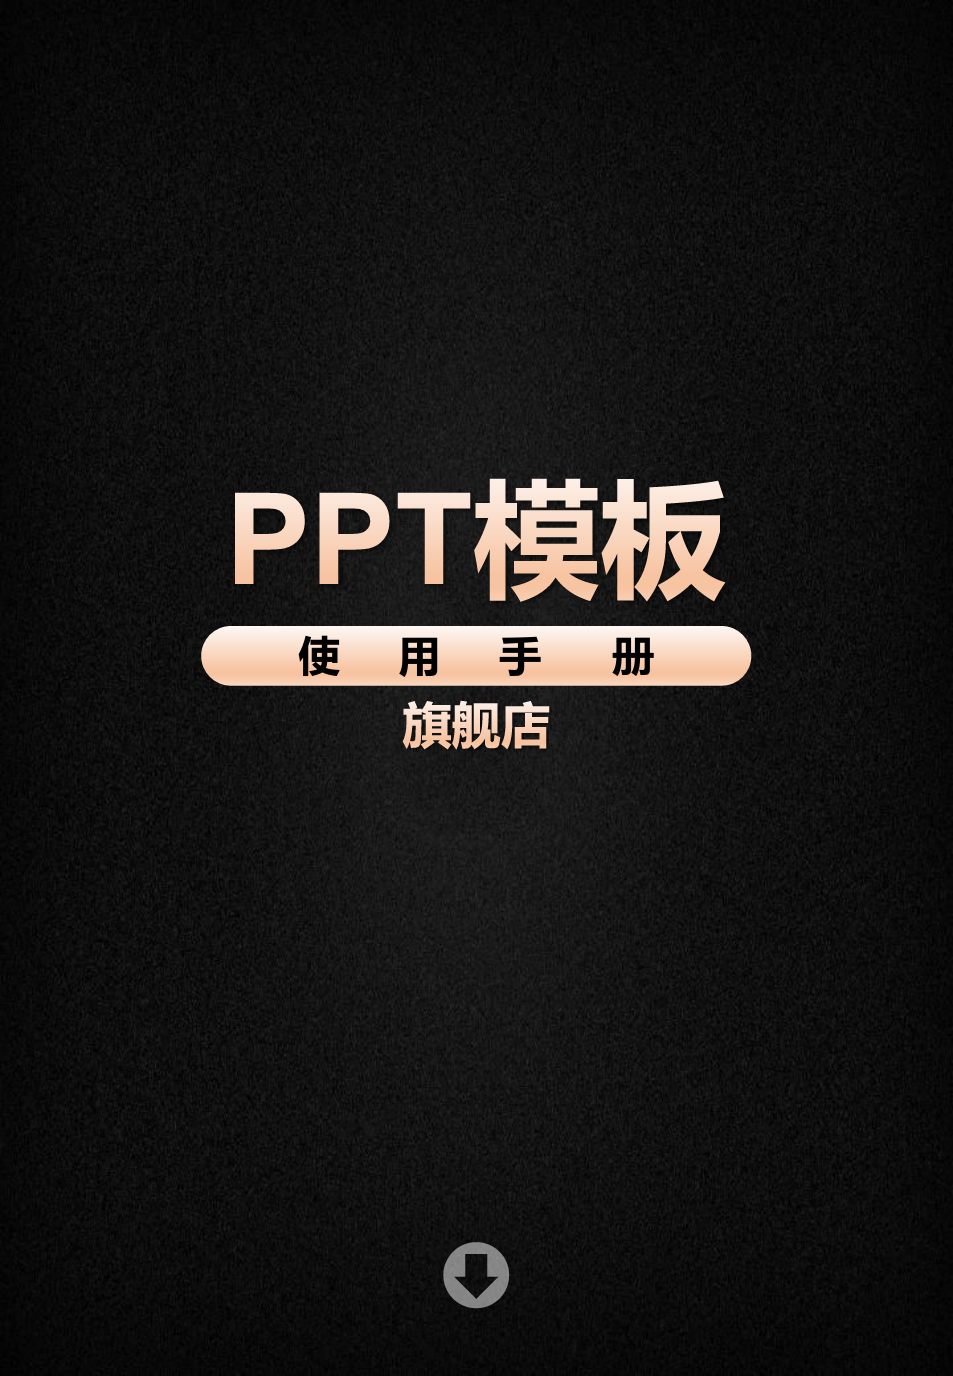 PPT模板使用手册-pptx